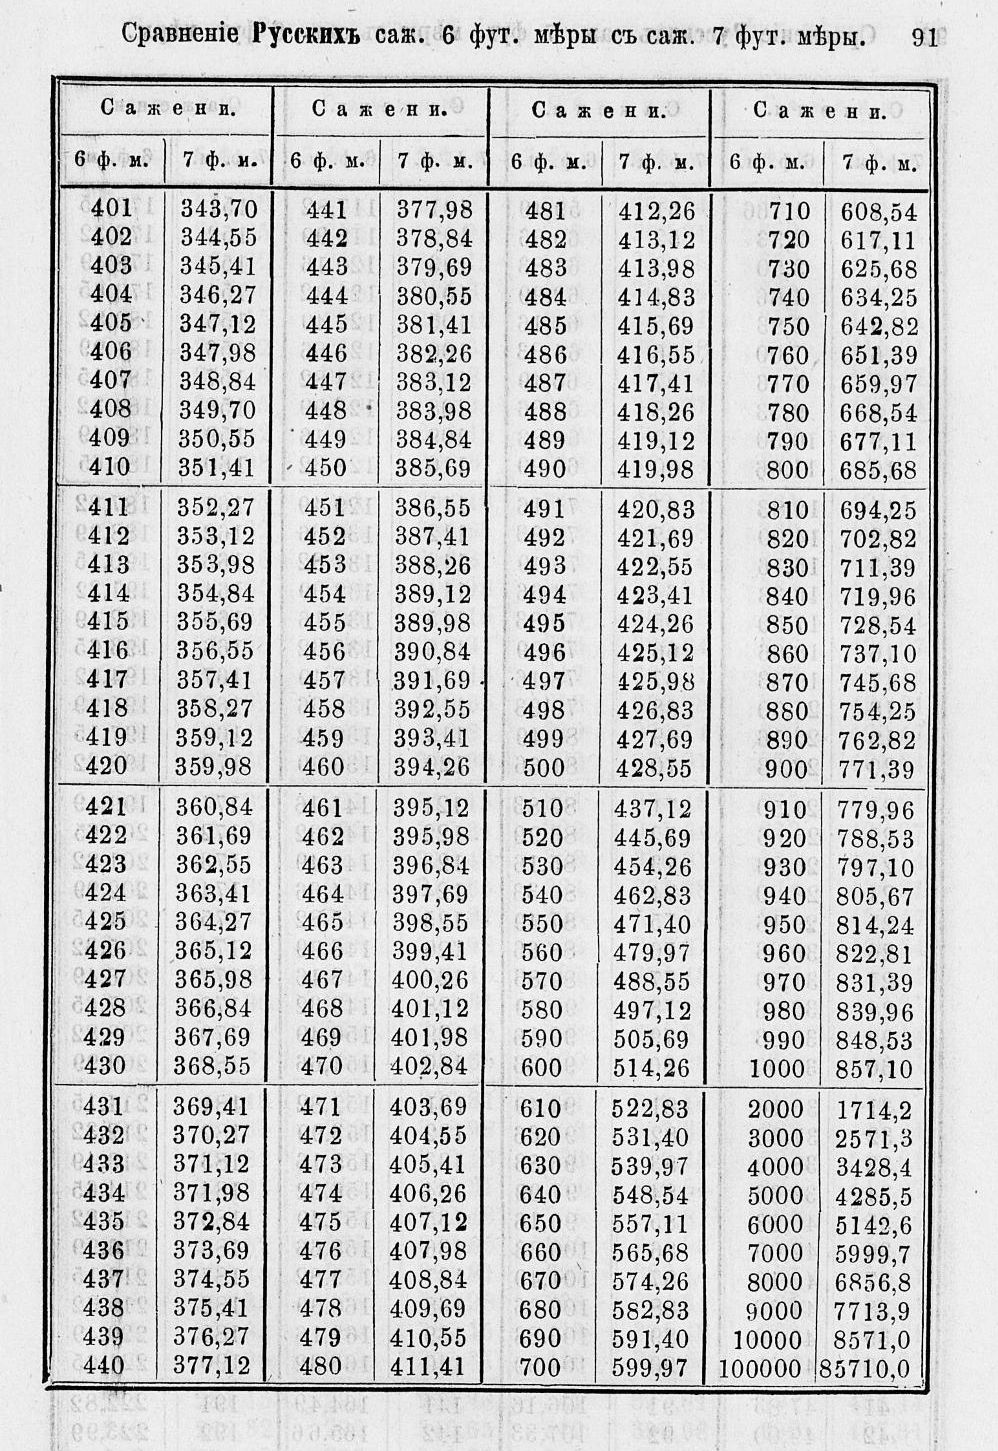 Таблицы для сравнения иностранных линейных мер 0091.jpg